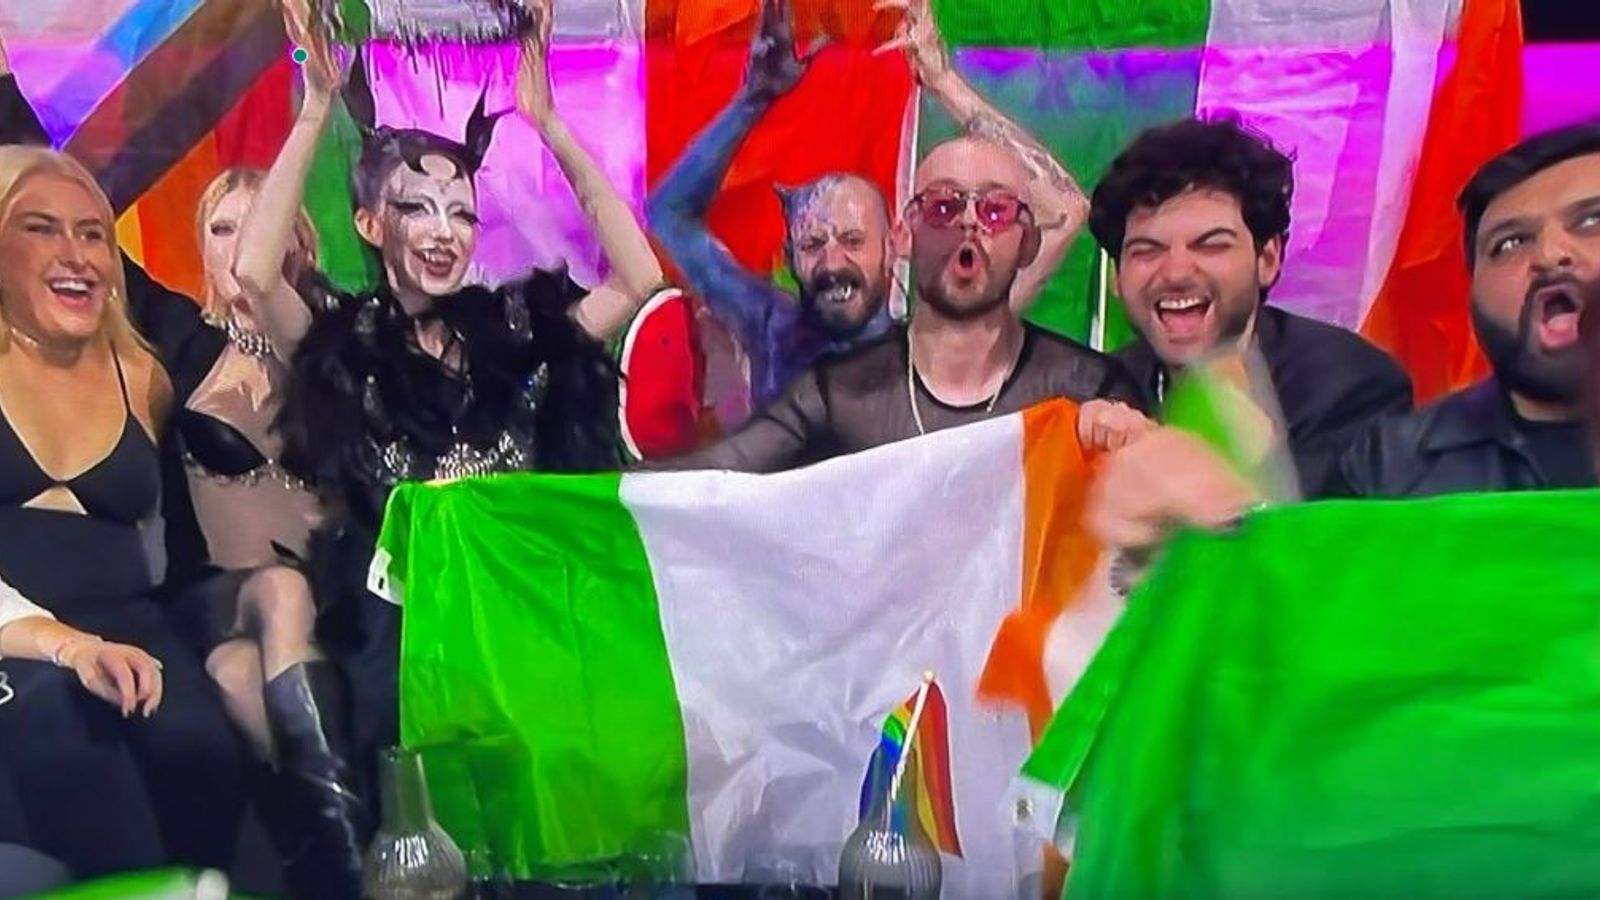 Un dysfonctionnement de garde-robe, une pastèque et des points nuls : cinq moments de l’Eurovision que vous avez peut-être manqués |  Actualités Ents & Arts